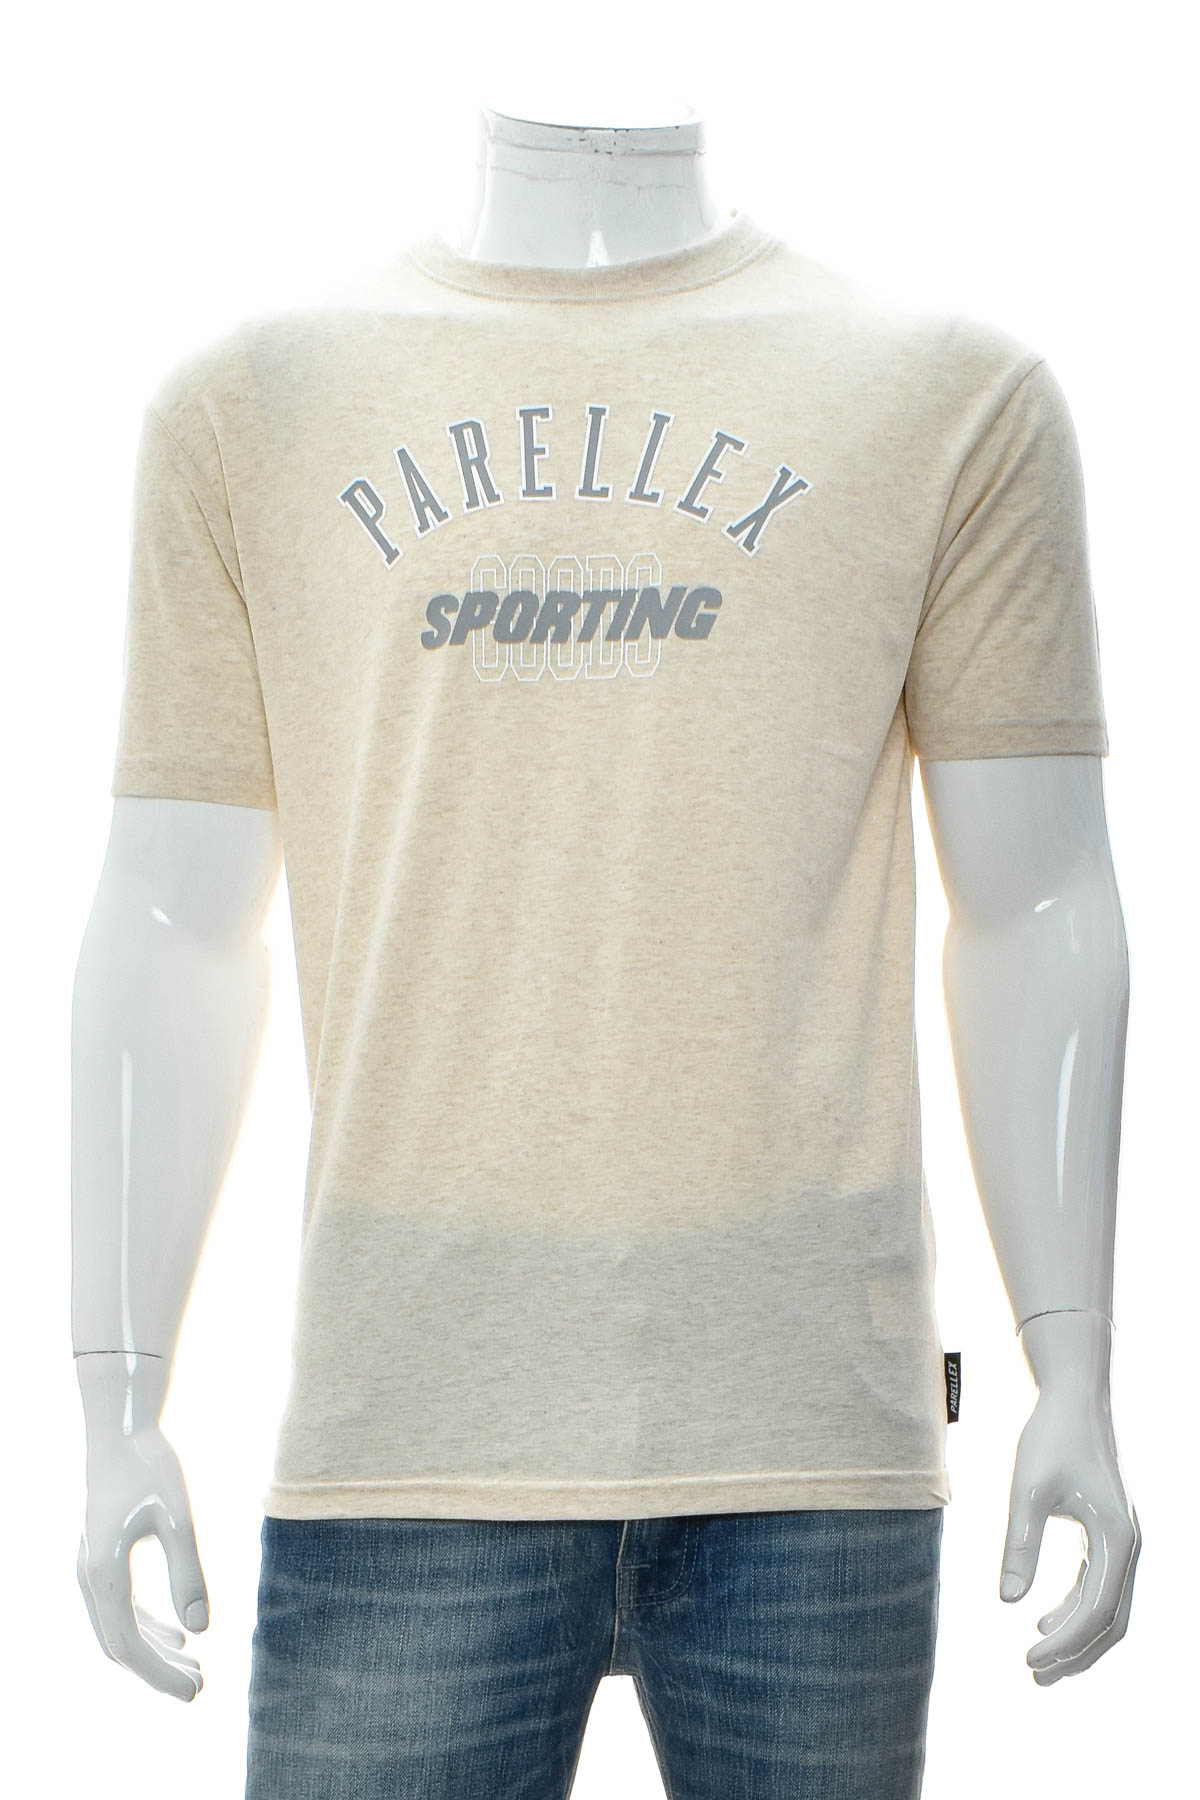 Men's T-shirt - PARELLEX - 0